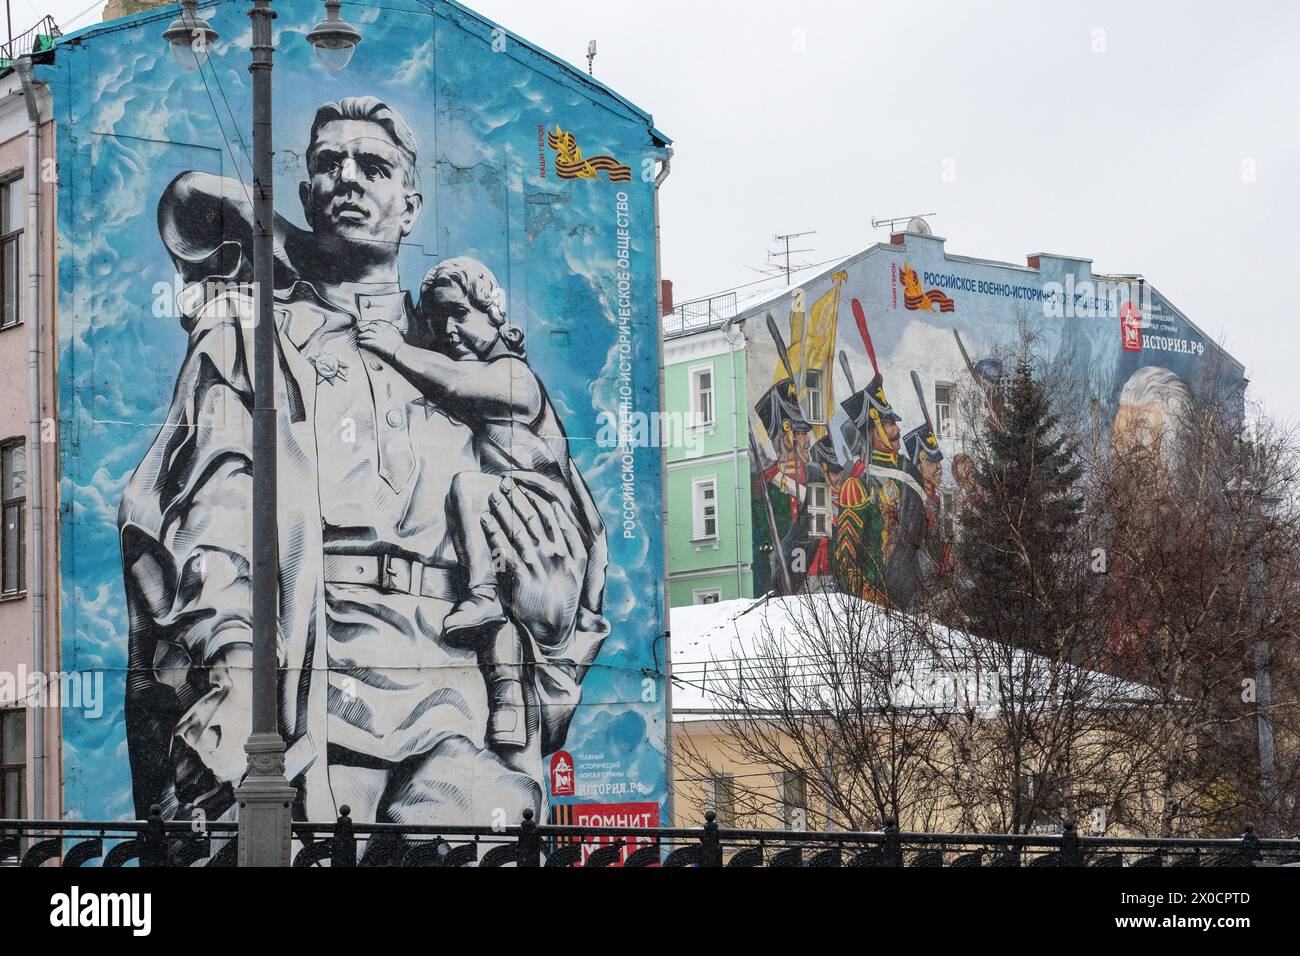 Moscou, Russie - 17 janvier 2018 : deux peintures murales à grande échelle, chacune racontant silencieusement une histoire de bravoure et d'honneur, ornent les façades des bâtiments sous le tr Banque D'Images